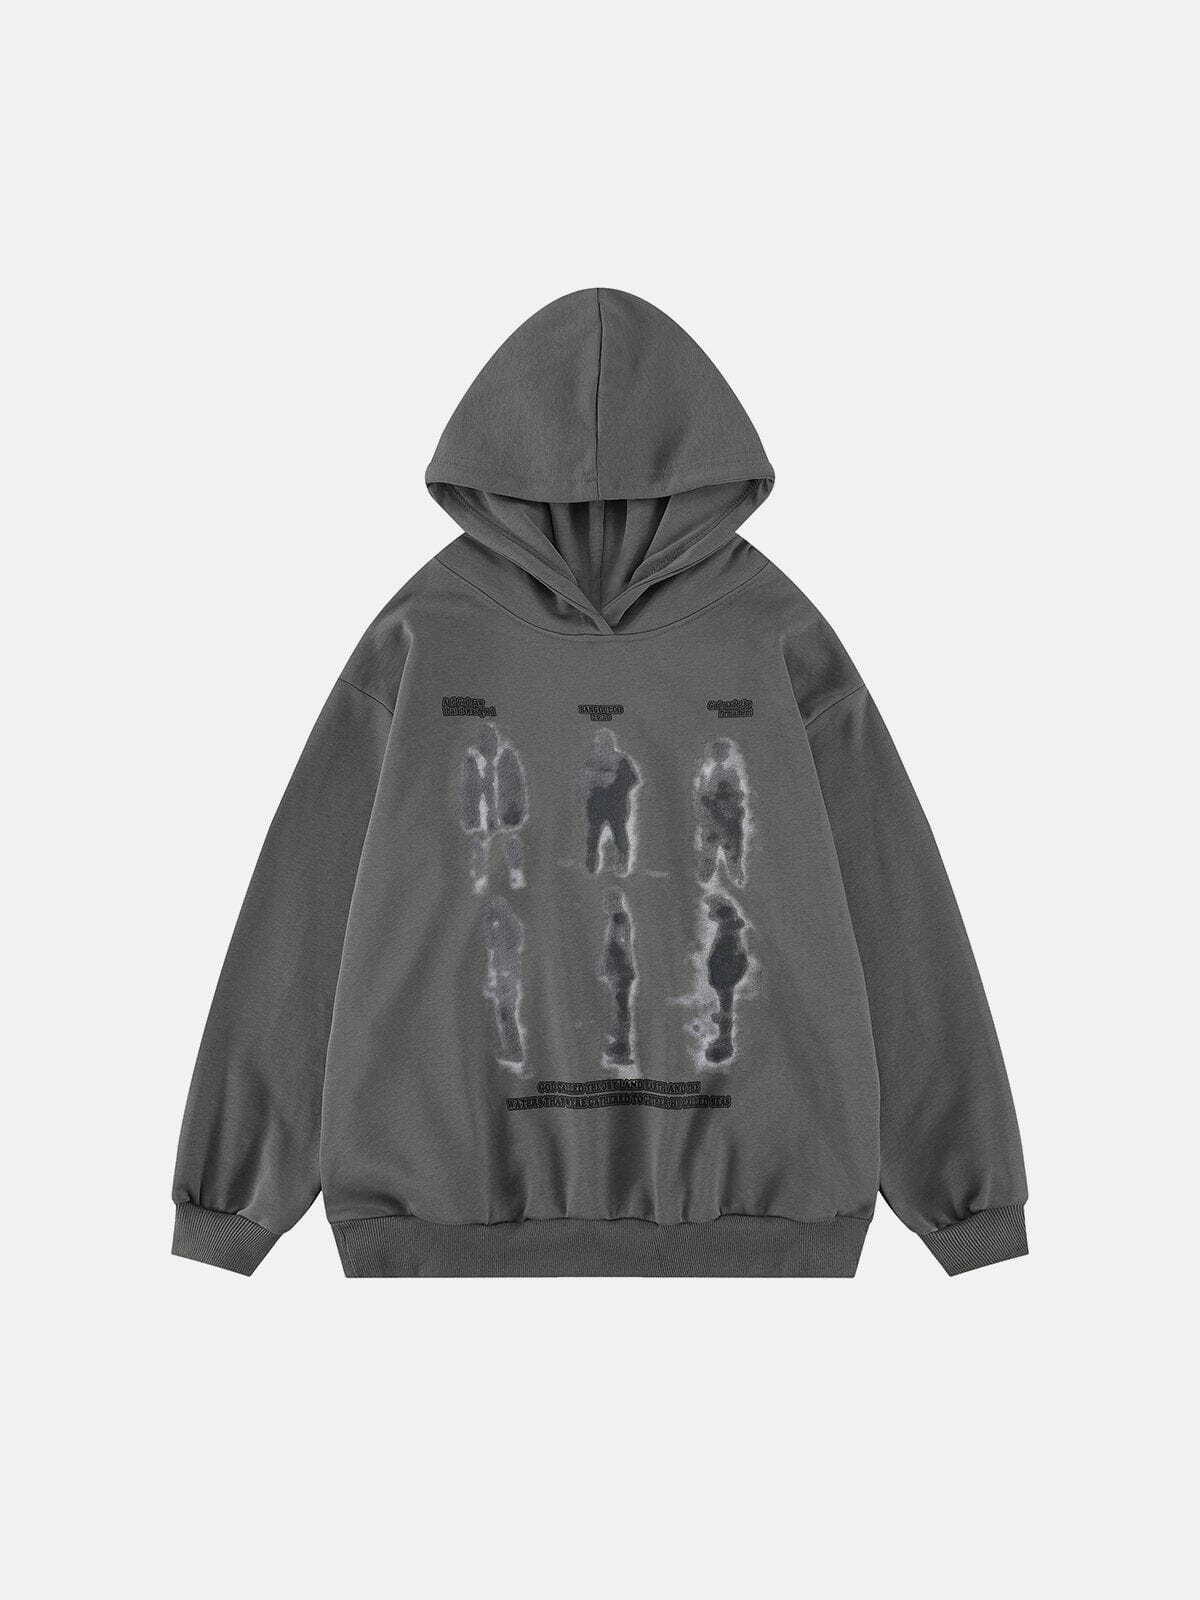 abstract print hoodie vintage & edgy streetwear essential 3548